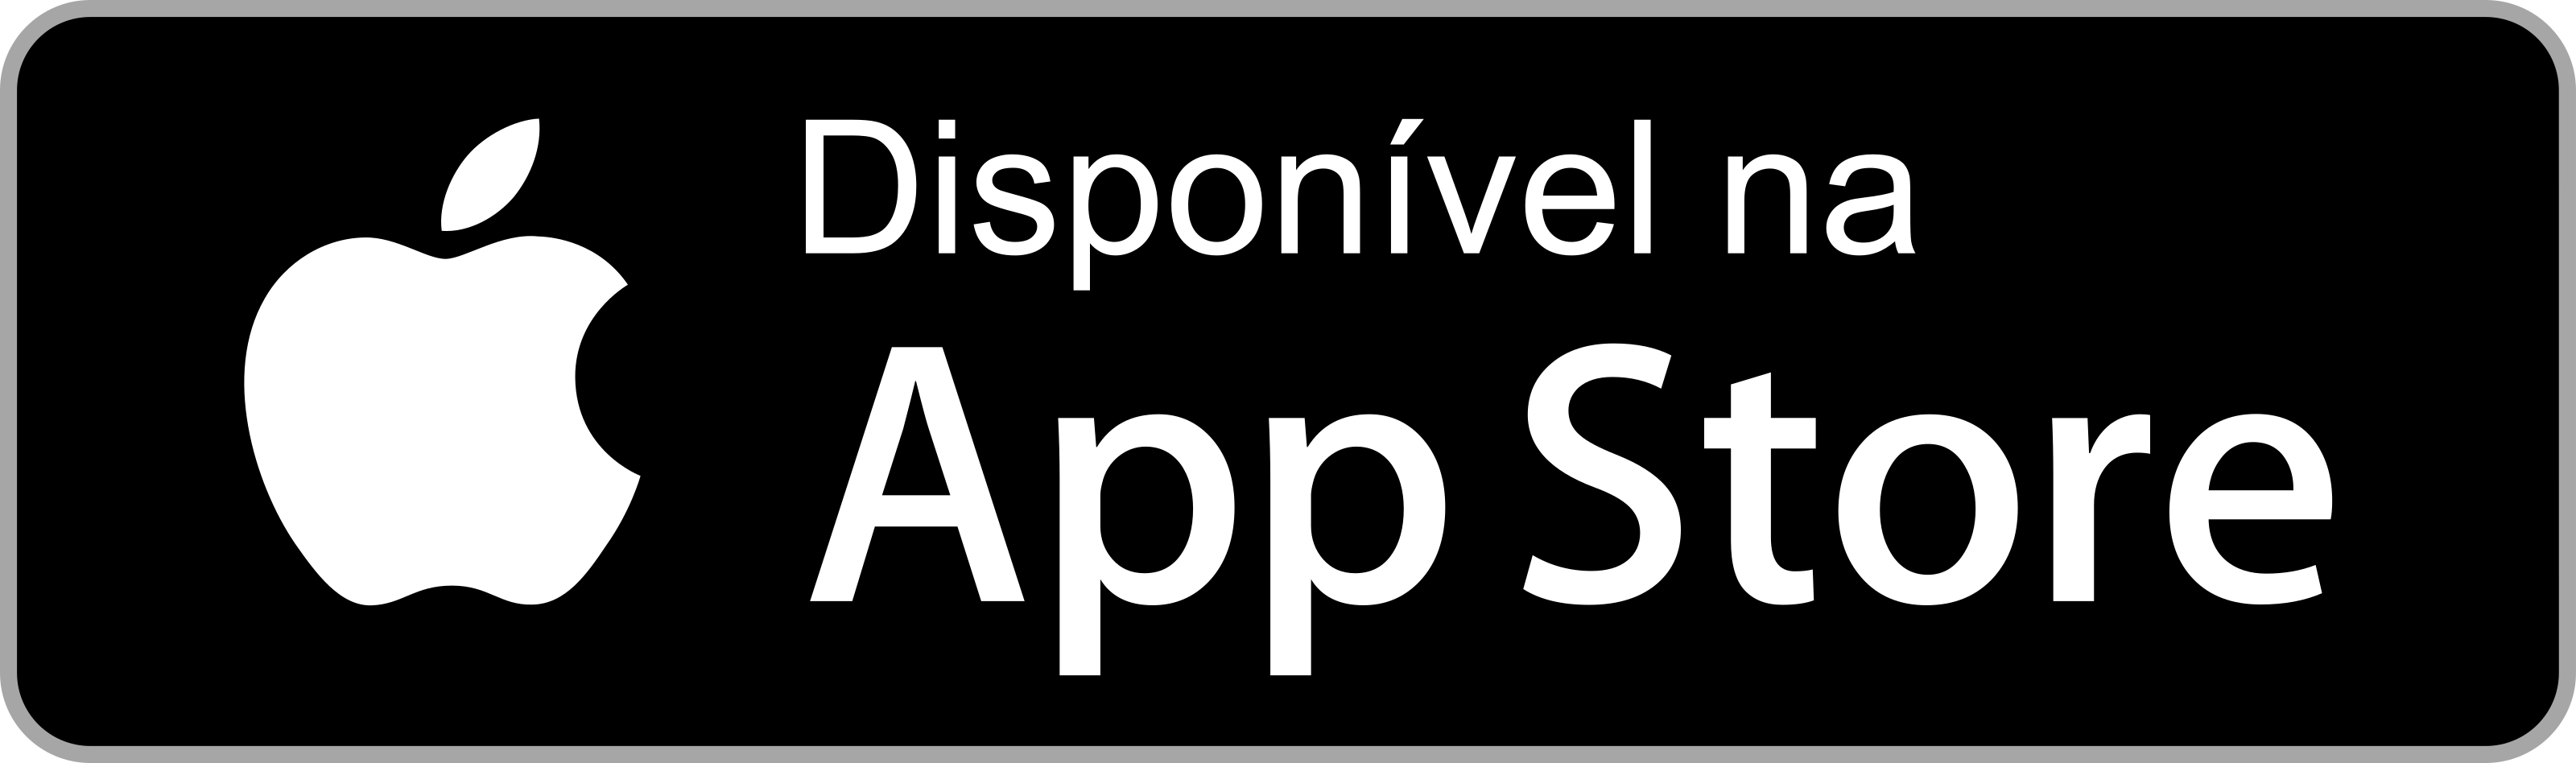 disponivel na app store botao 1 - Disponível na App Store - Botão Disponível na App Store